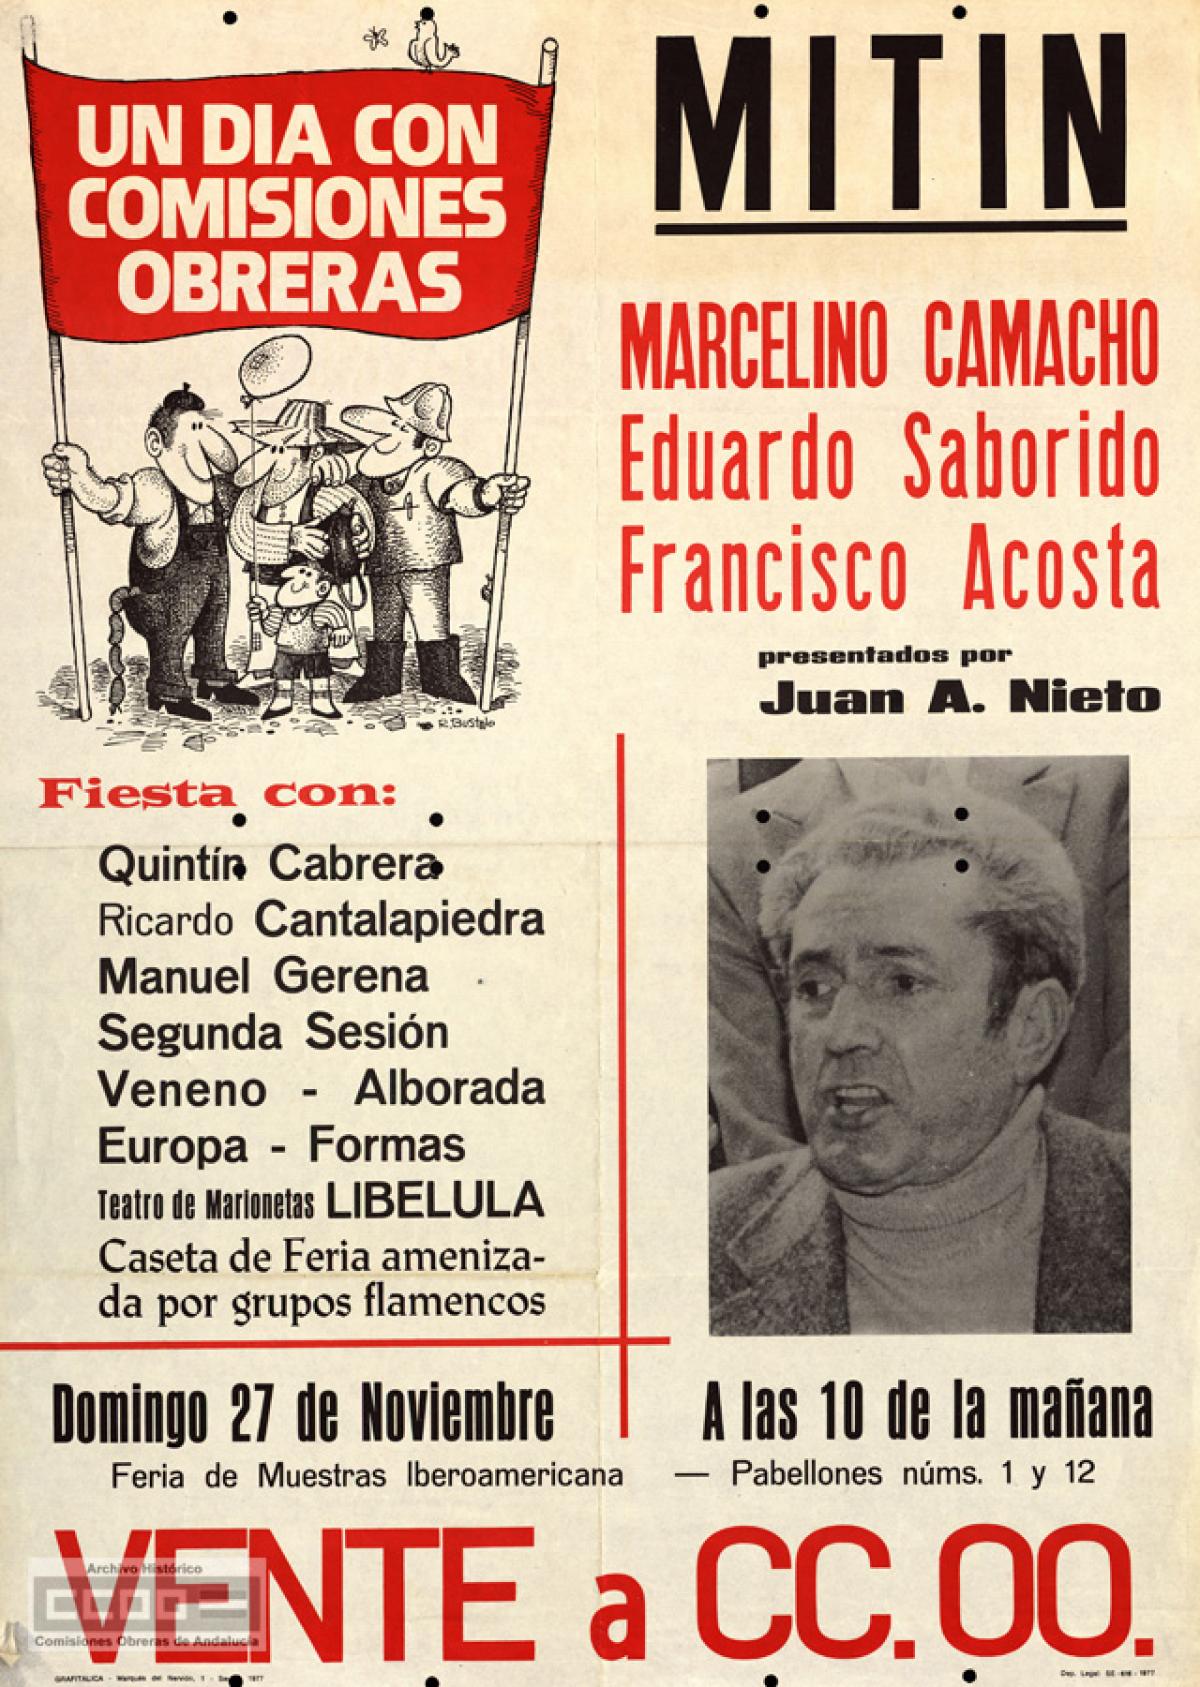 MItin de Marcelino Camacho y Eduardo Saborido